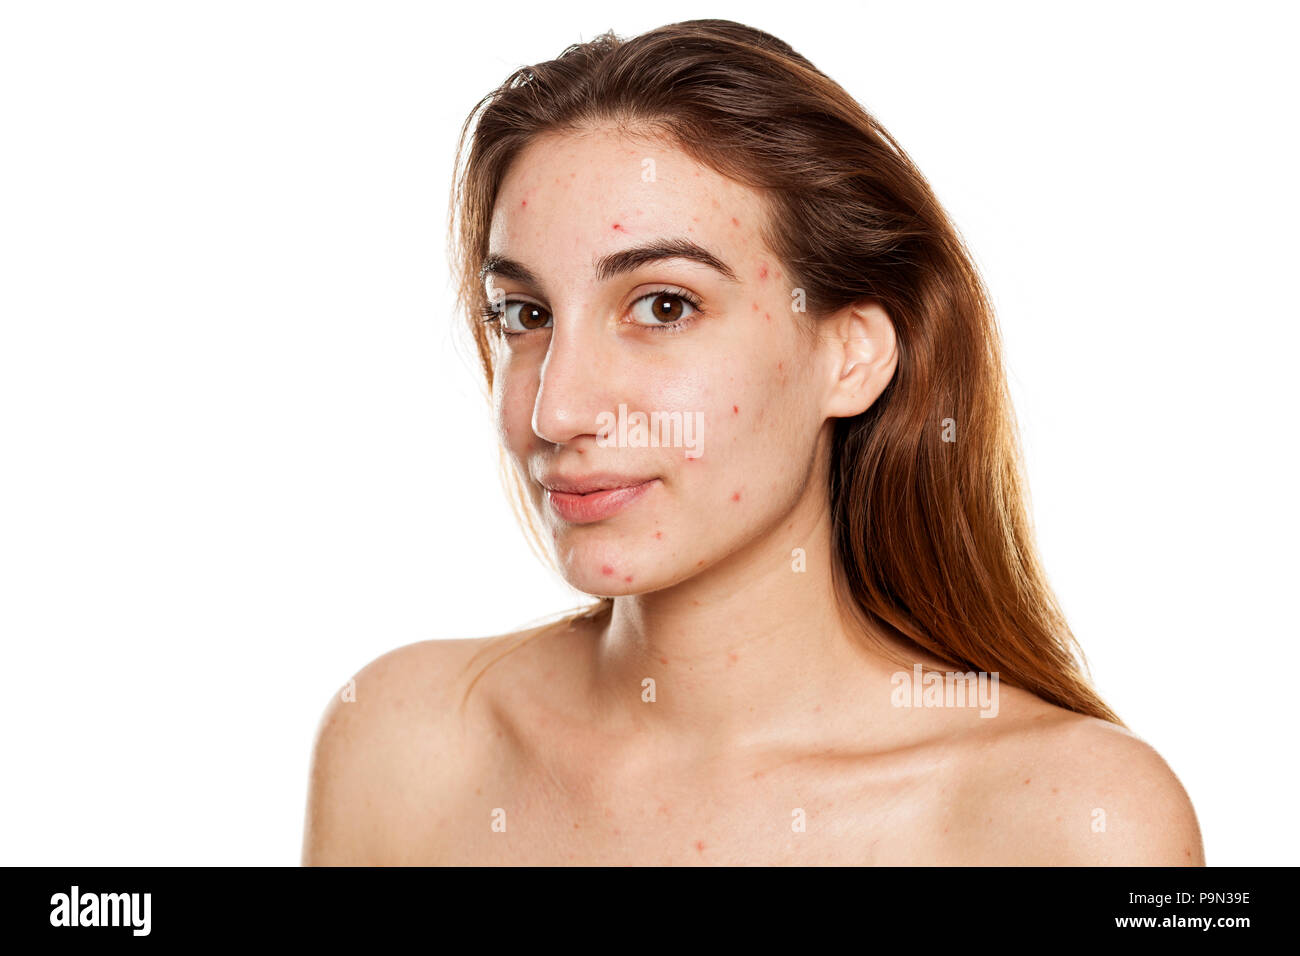 Junge lächelnde Frau mit problematischer Haut und ohne Make-up Posen auf weißem Hintergrund Stockfoto